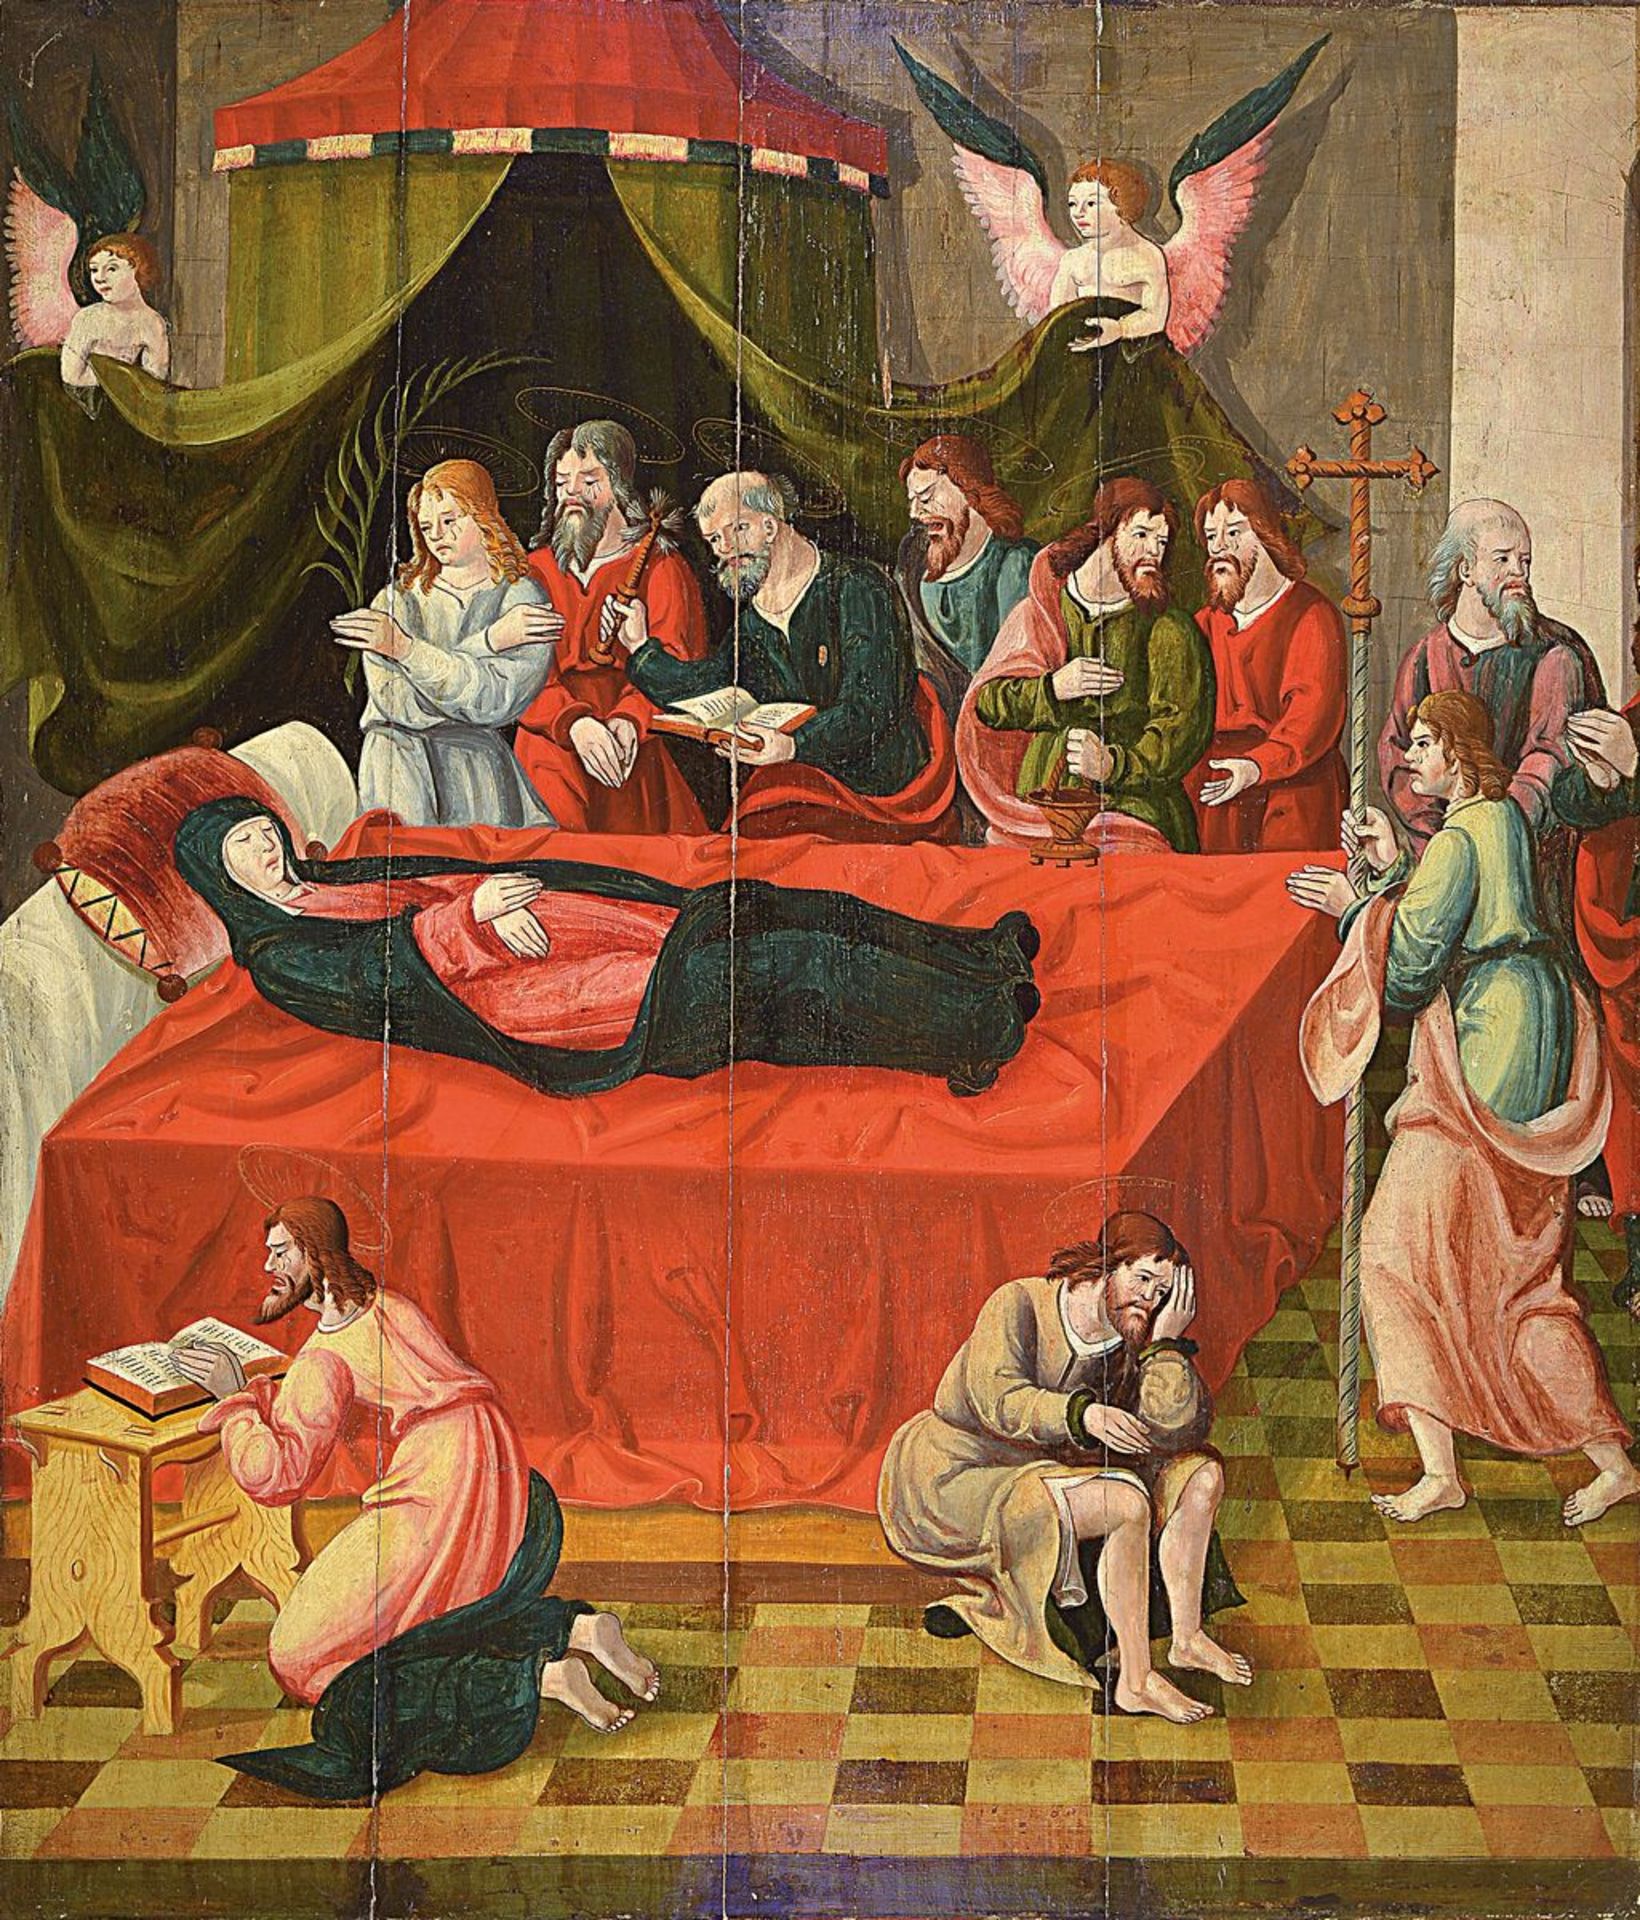 Tafelbild, wohl süddeutsch, 1520/60, "Das Entschlafen der Gottesmutter", Beweinung der